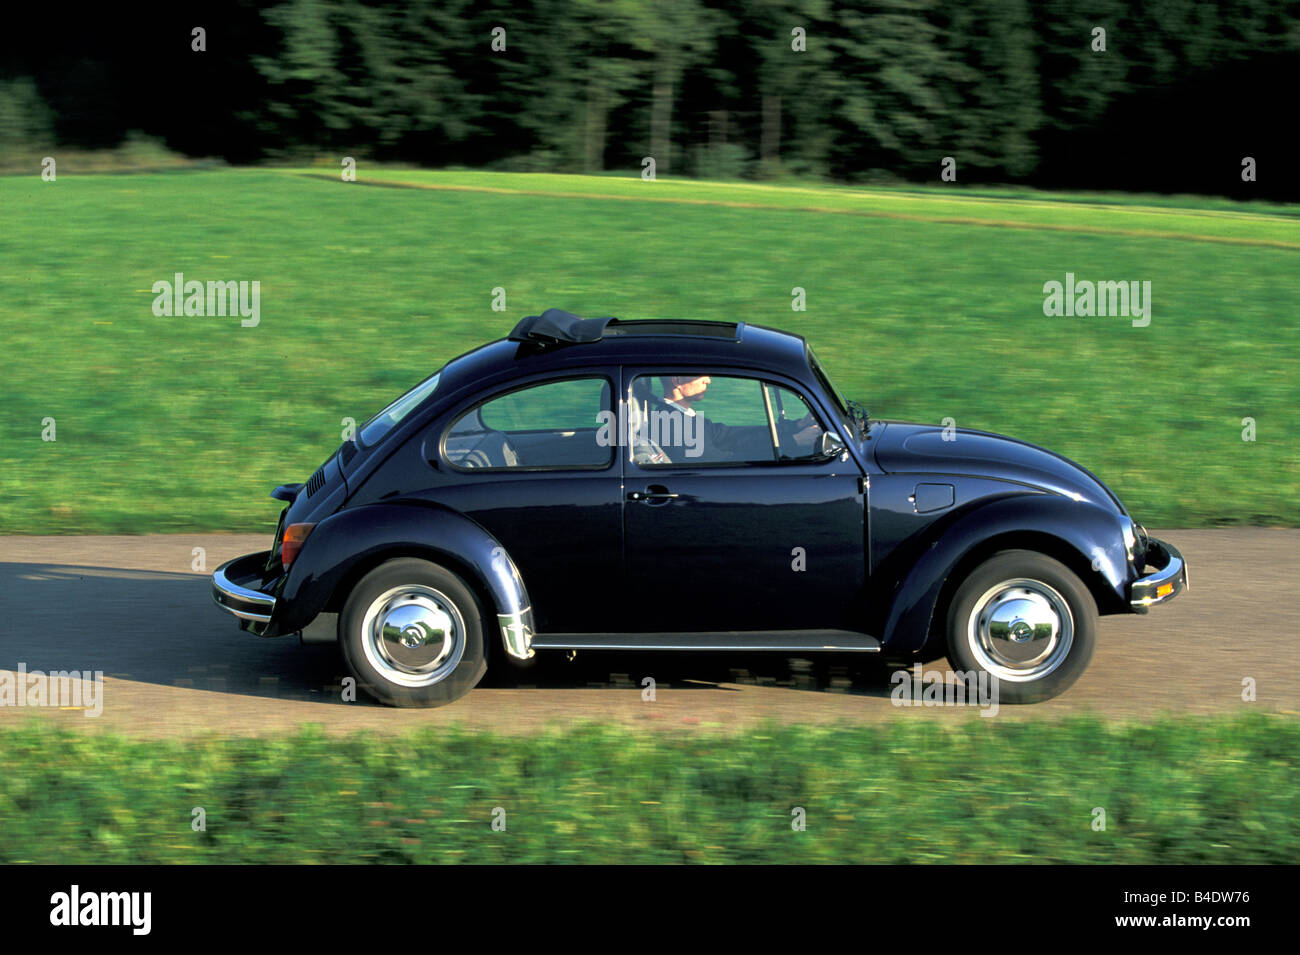 Auto, VW Volkswagen Käfer, Bj. 1978-2003, Mexiko Käfer, Limousine, schwarz, Landstraße, fahren, Seitenansicht Stockfoto